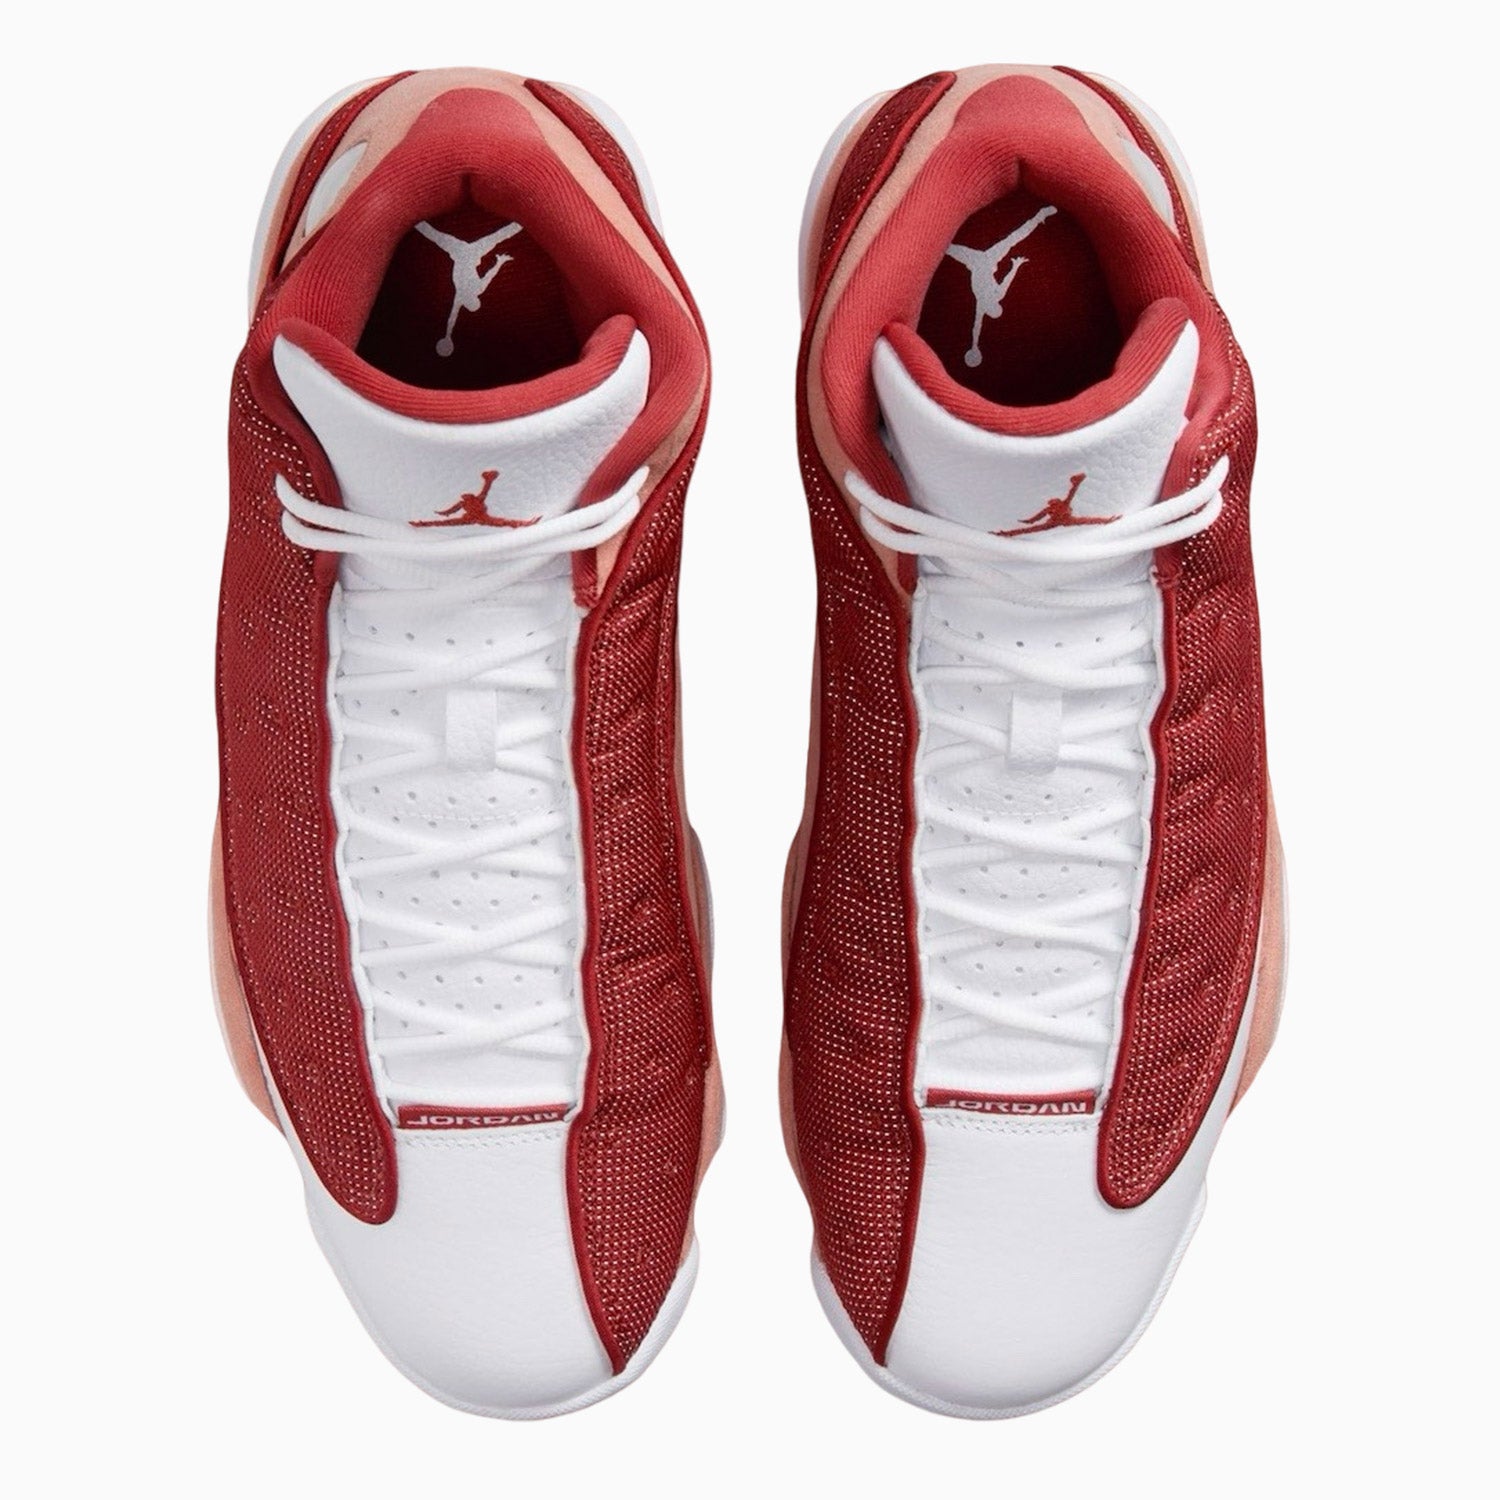 mens-air-jordan-13-retro-dune-red-shoes-dj5982-601